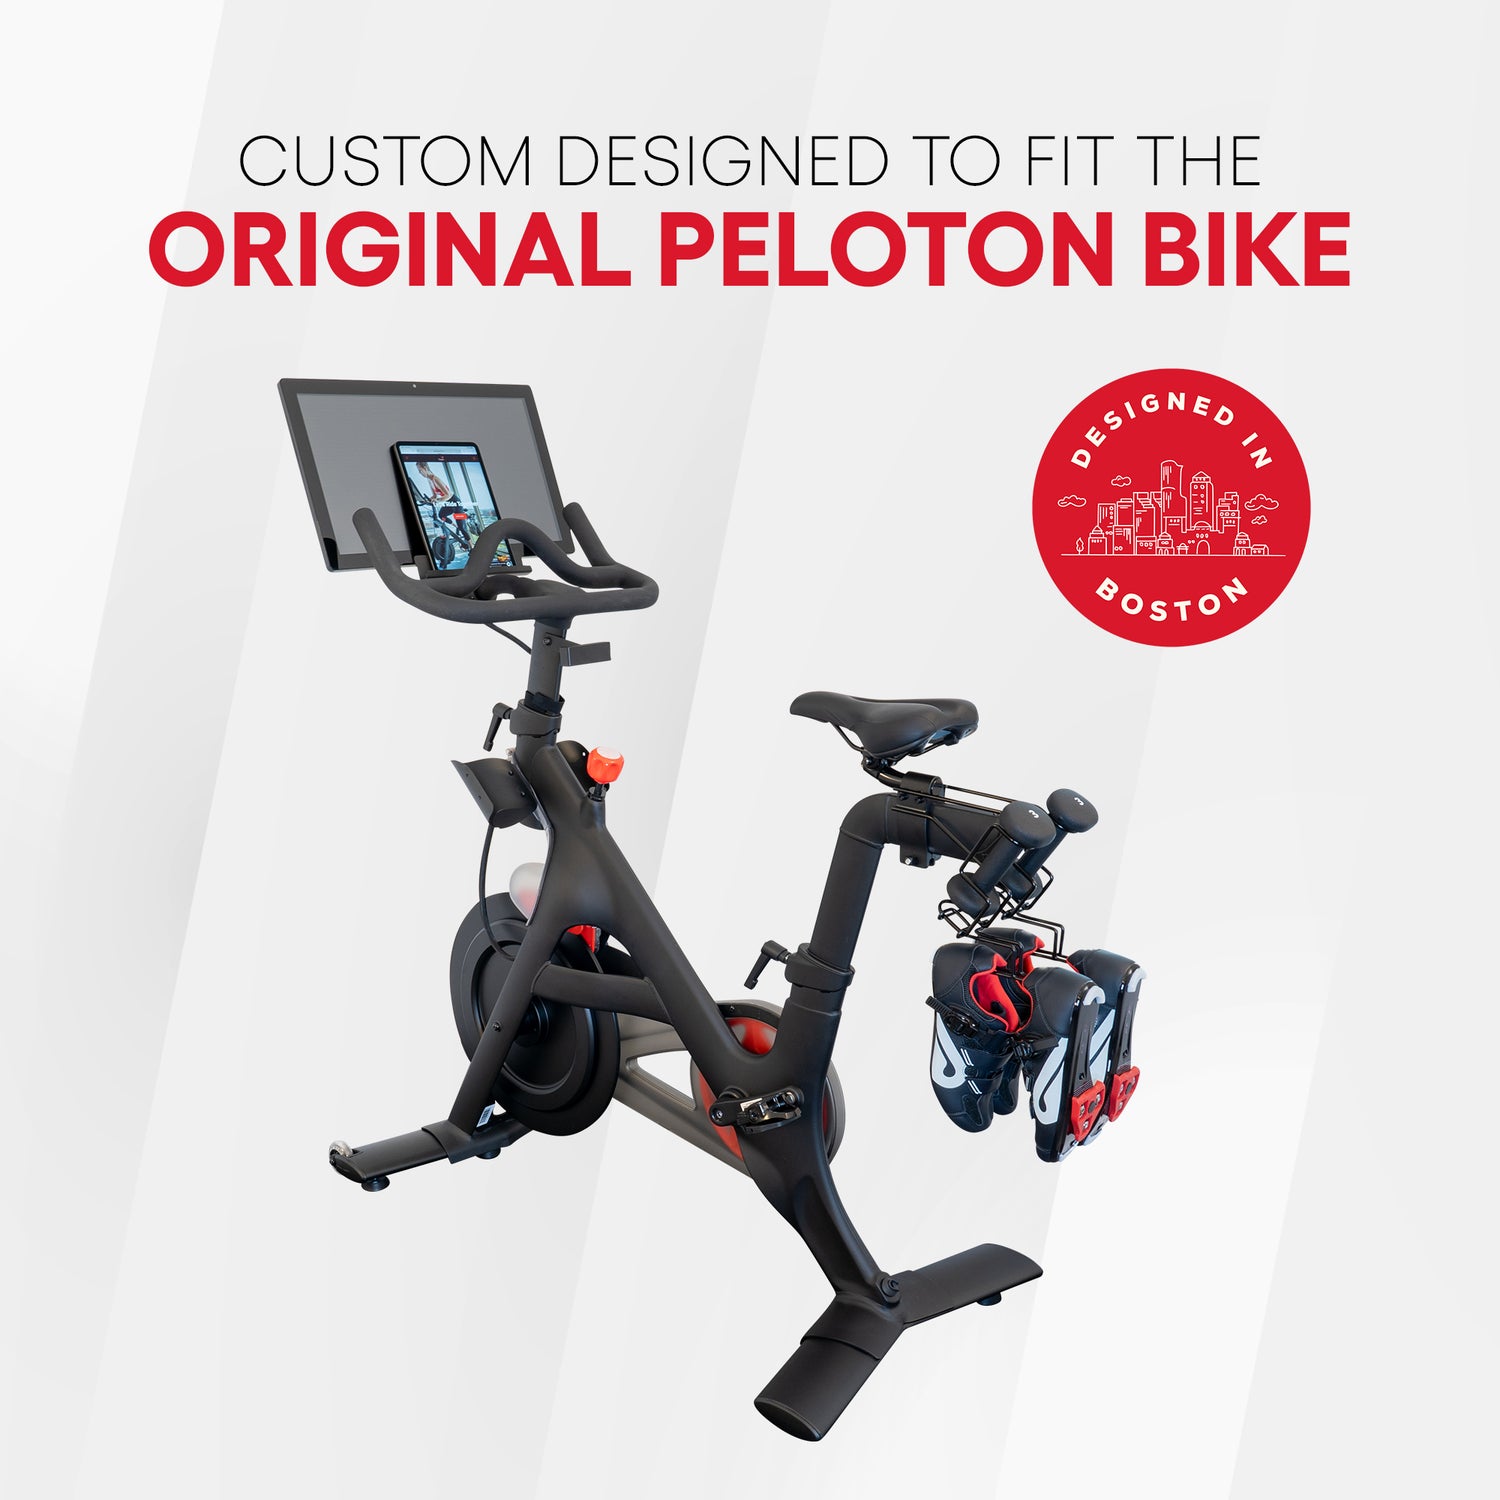 Custom designed to fit the original peloton bike